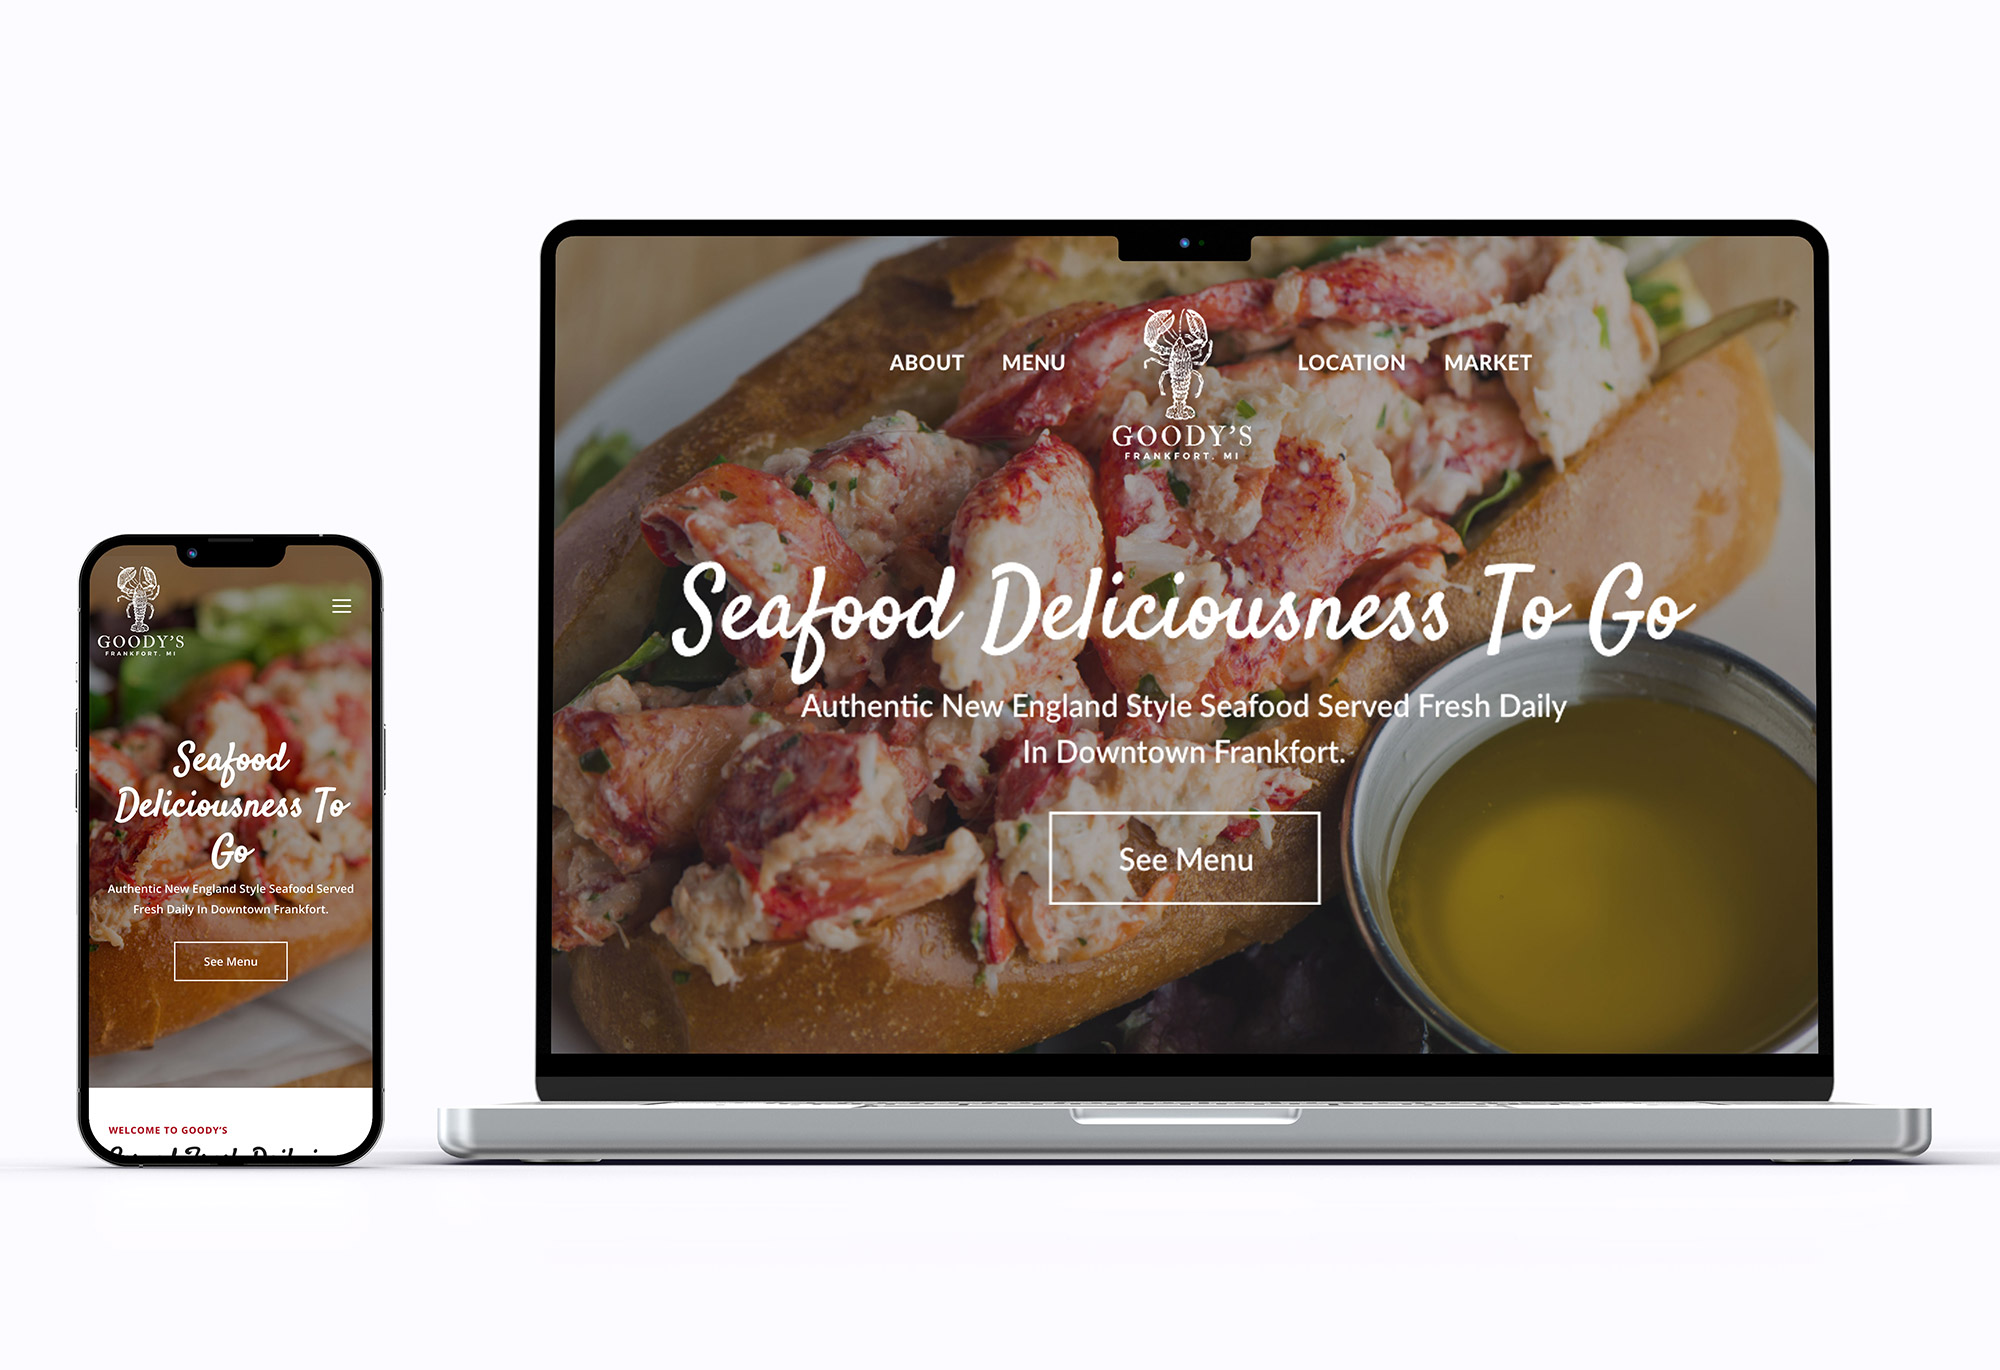 Goody's Lobster Shack, Greenlight Marketing, Gary Mavis